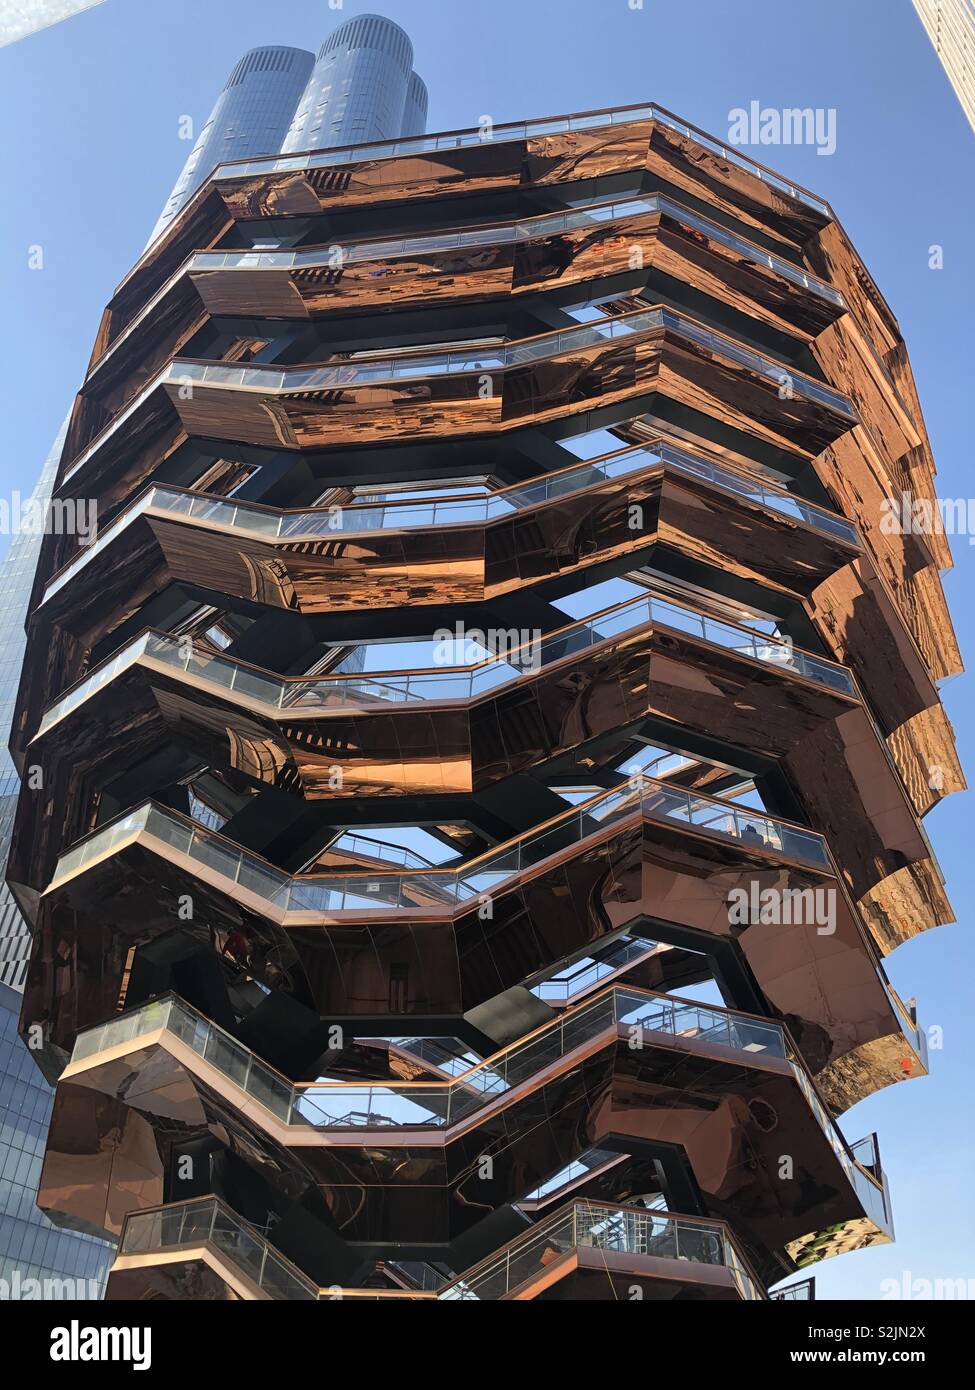 "Le navire" sculpture interactive au cœur du nouveau quartier d'Hudson Yards dans la ville de New York. Conçu par l'architecte anglais Thomas Heatherwick. Ouverte le 15/3/19 Banque D'Images